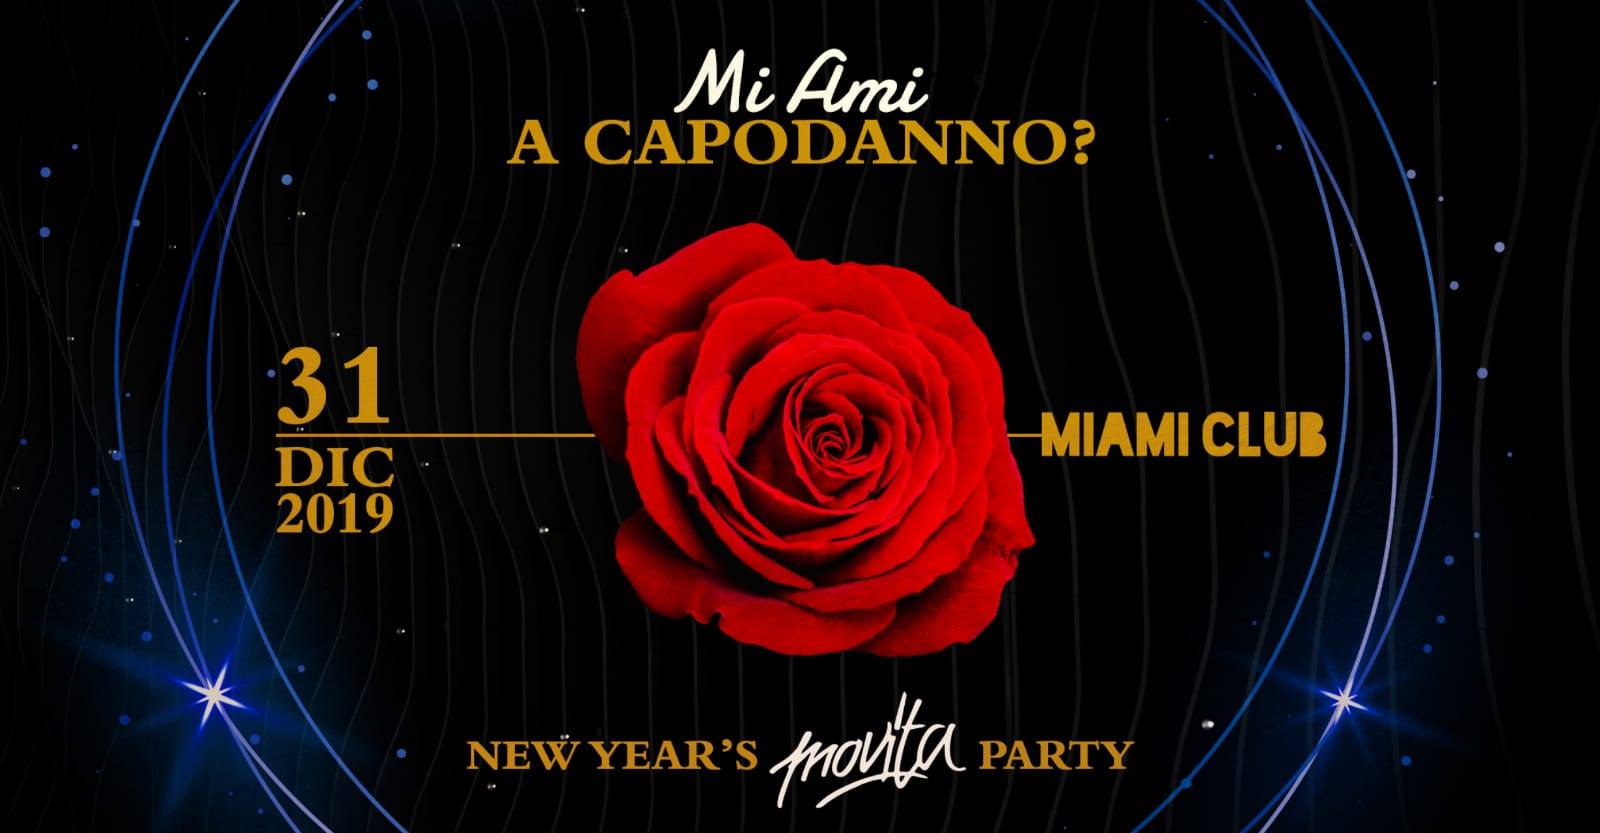 Capodanno Movita Miami Club Monsano